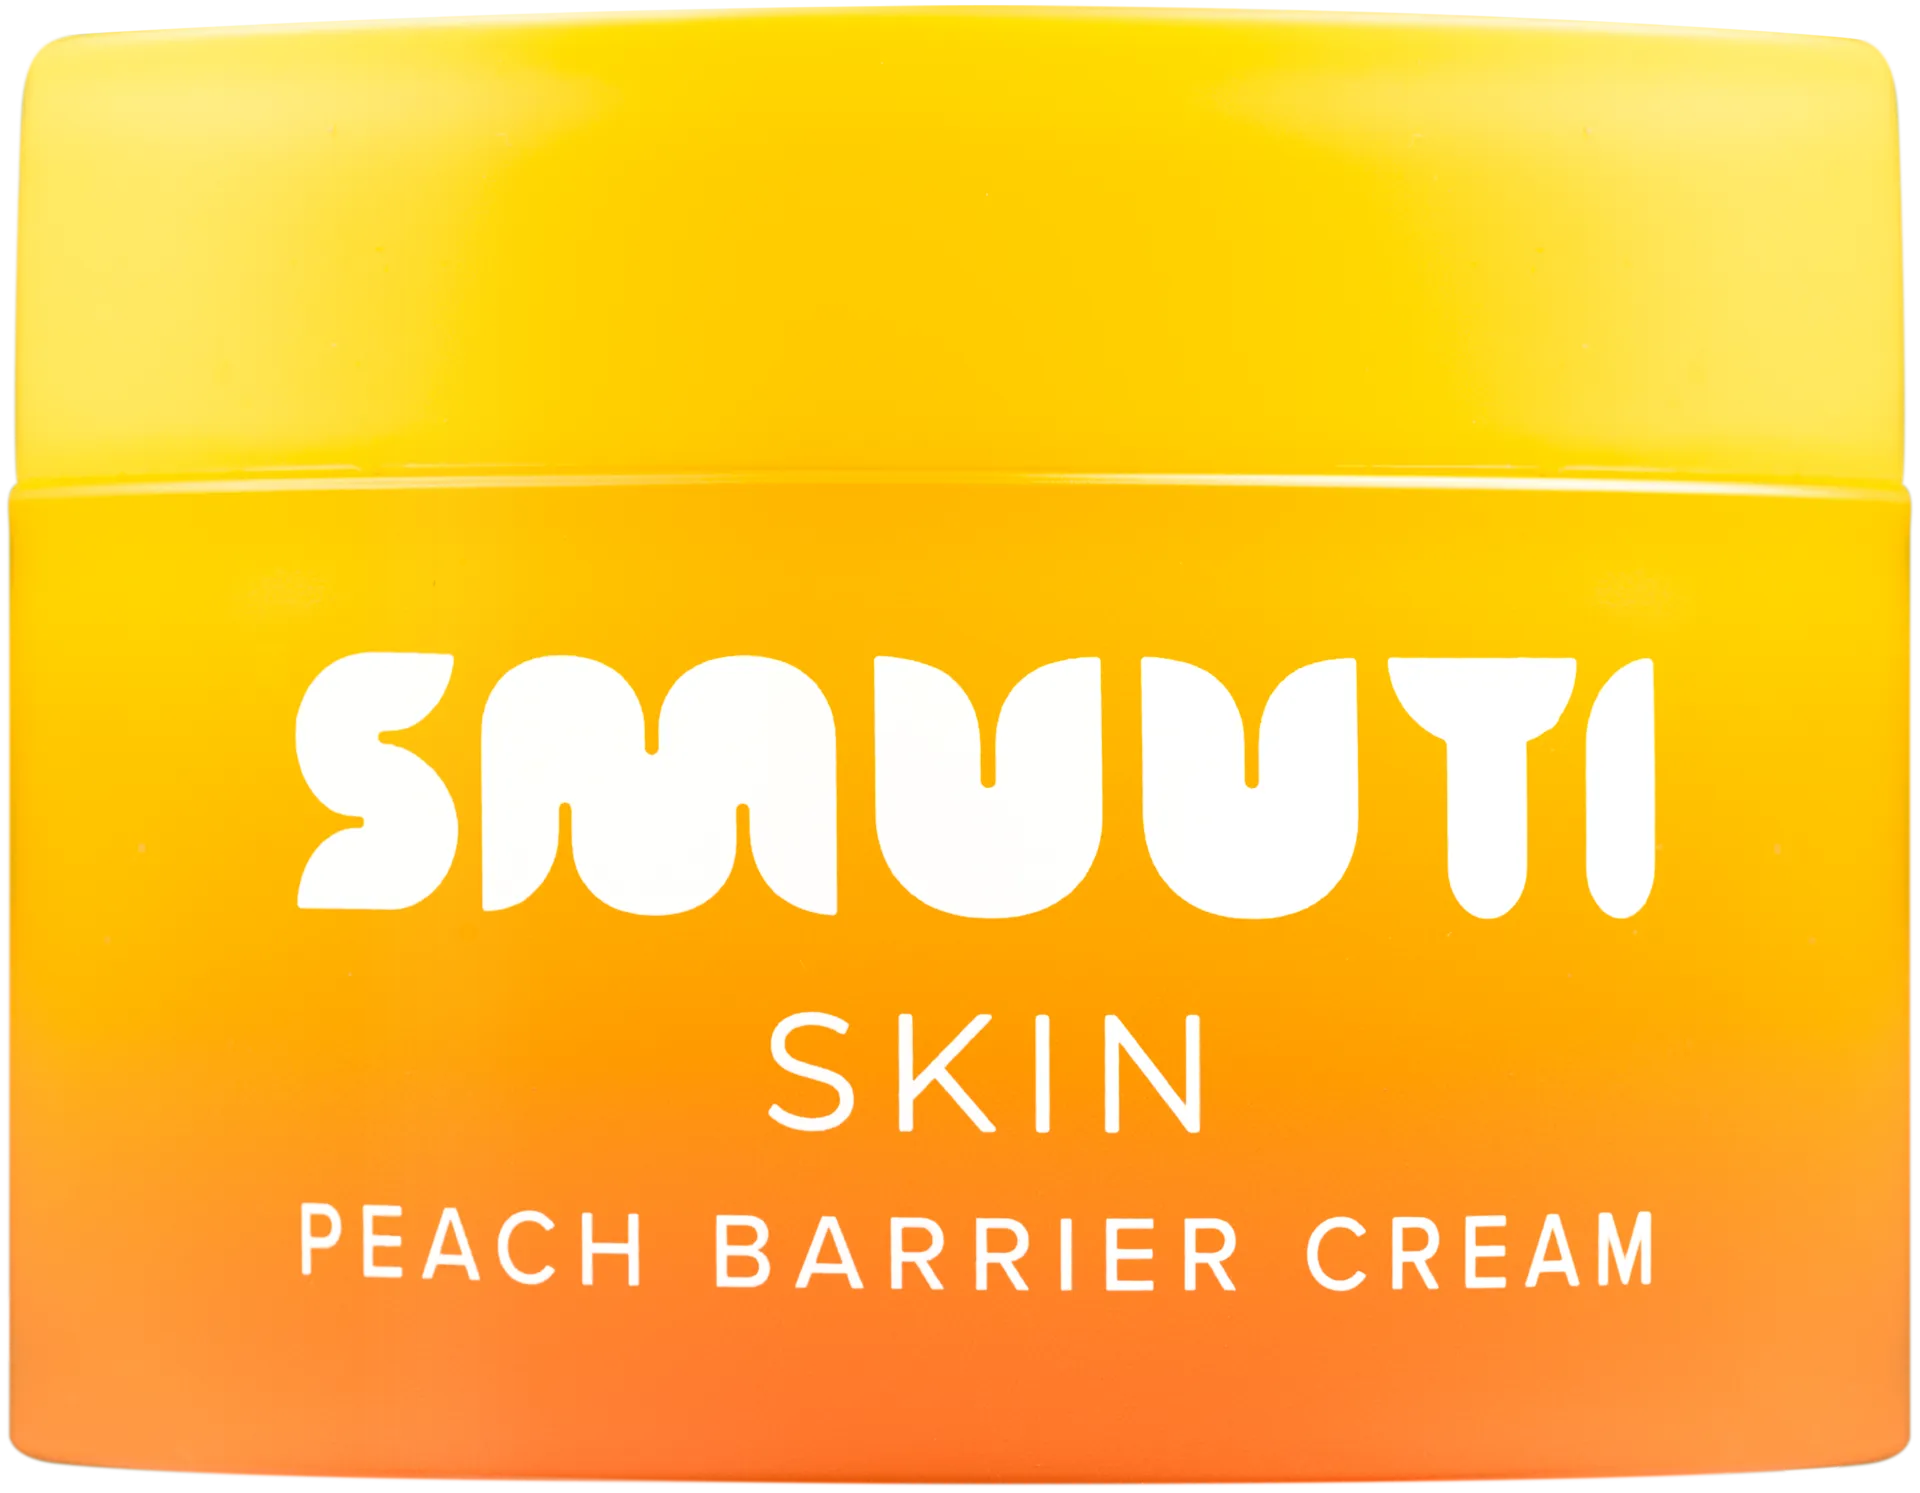 Smuuti Skin Peach Barrier Cream päivävoide 50 ml